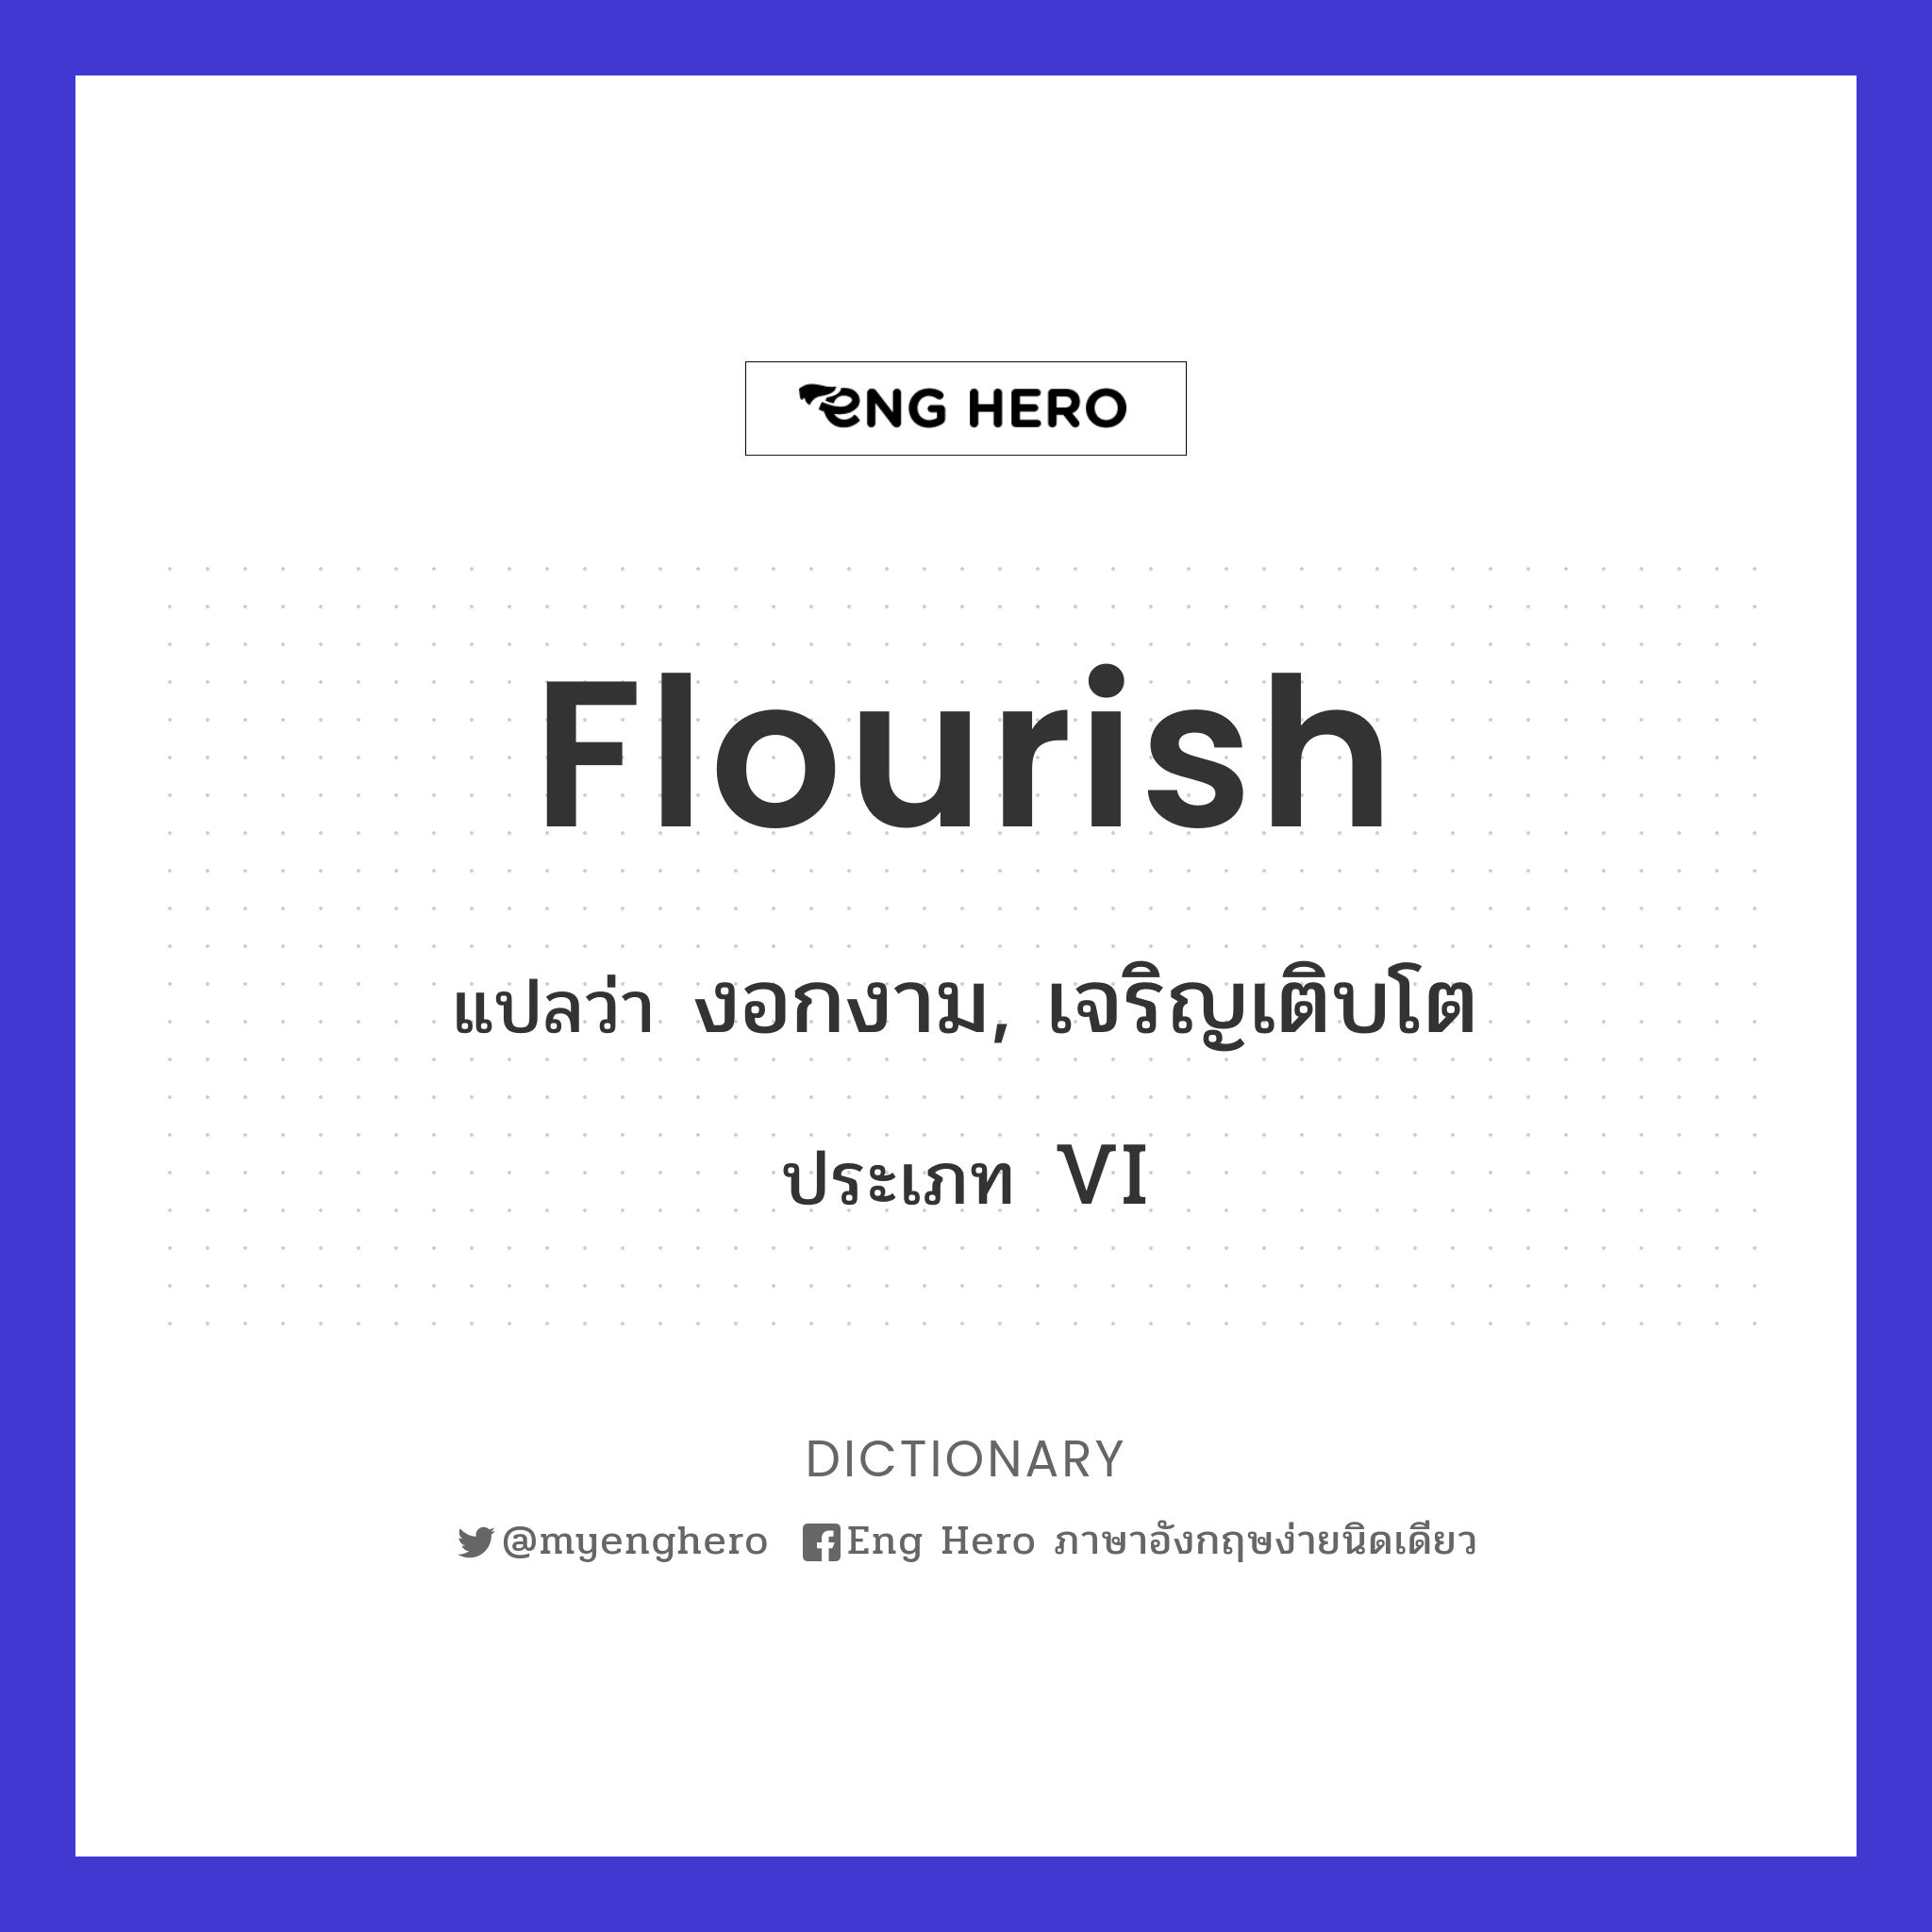 flourish